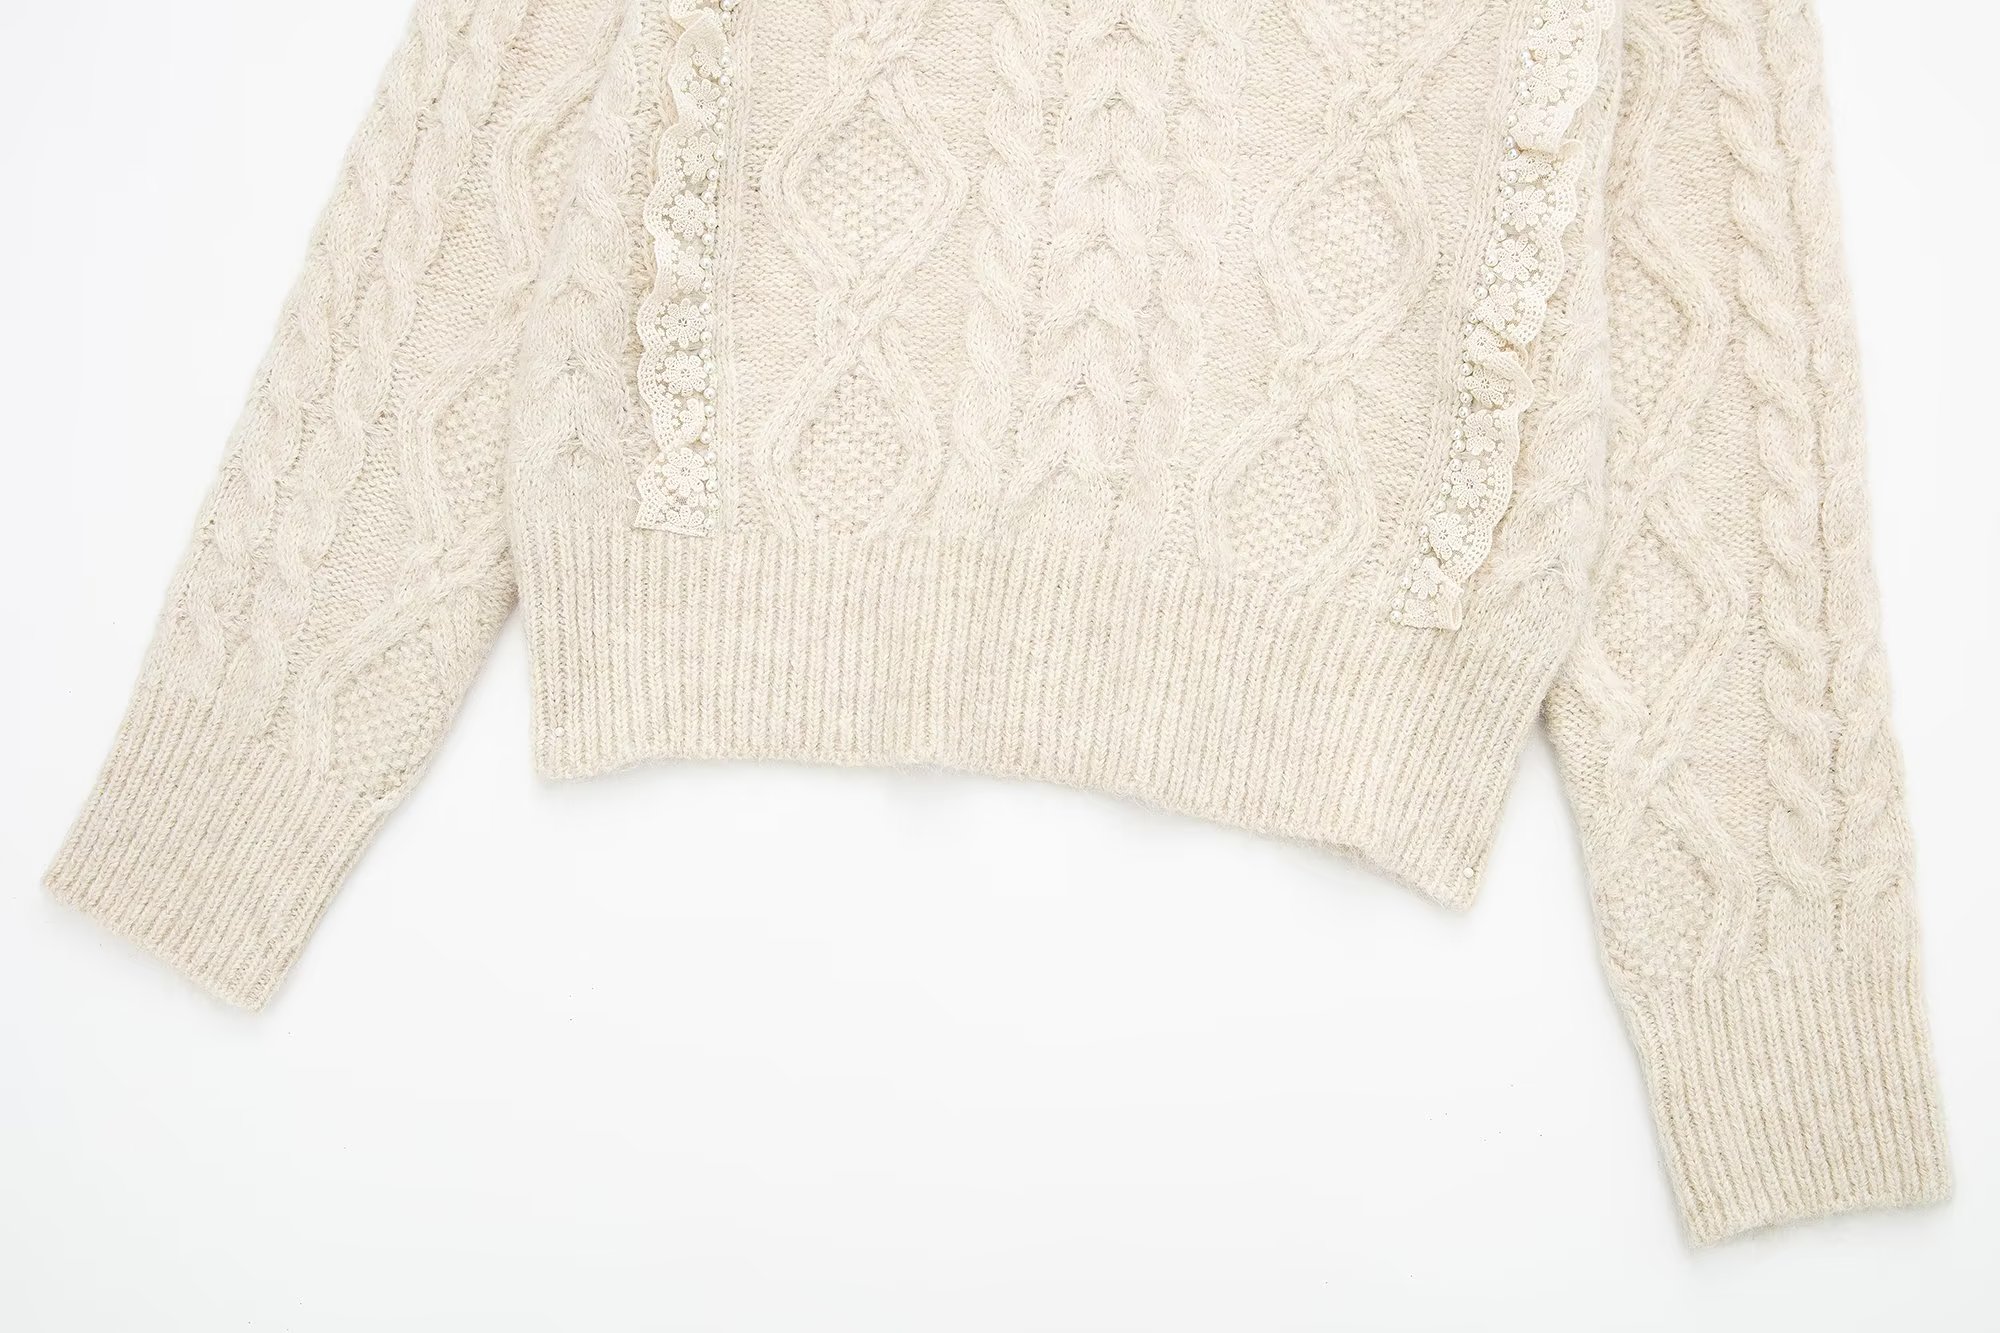 Woven Decorative Round Neck Pullover - Sweaters - Uniqistic.com